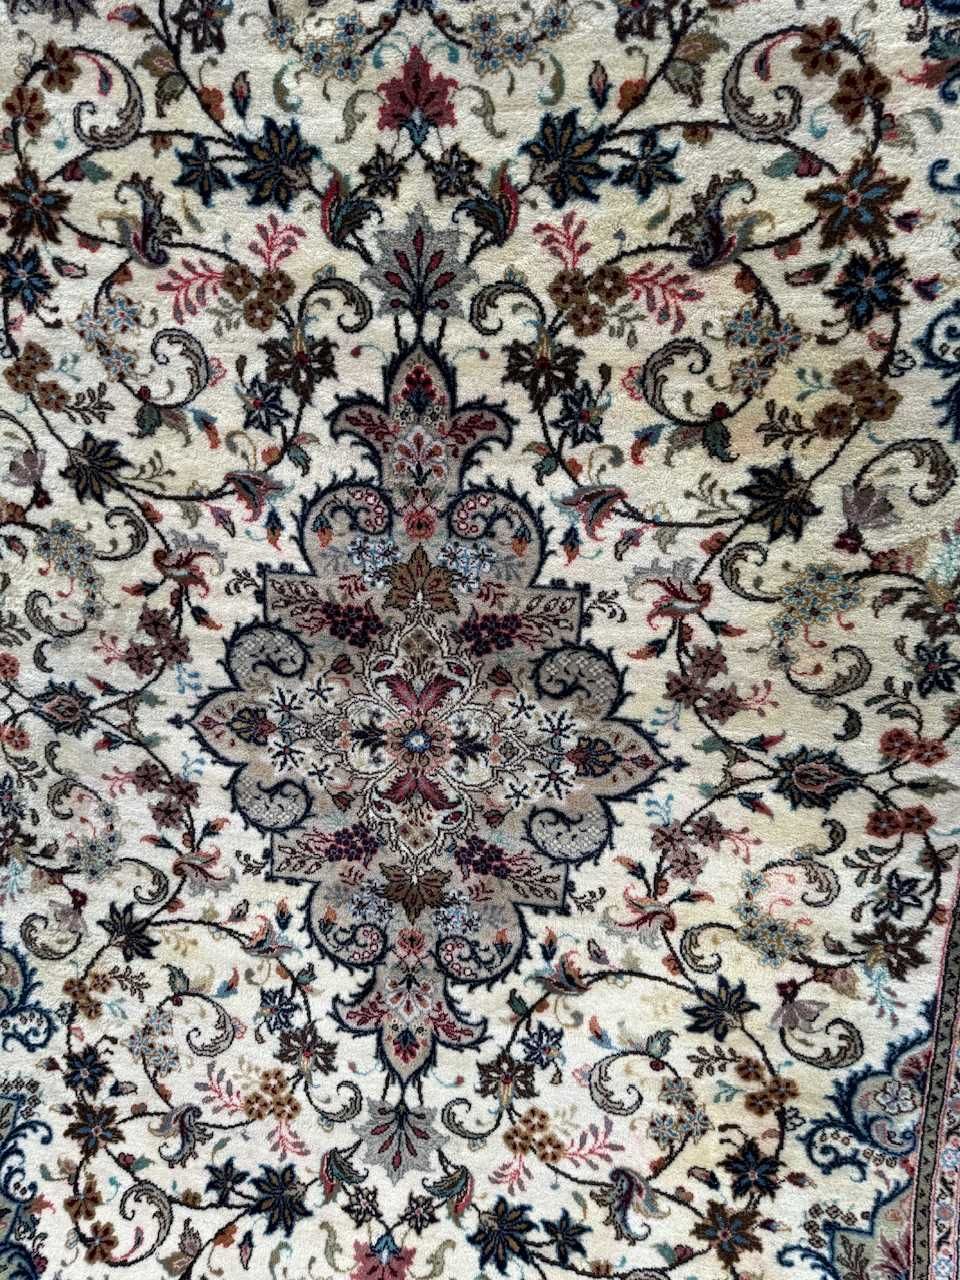 Kaszmirowy r.tkany dywan perski KESHAN 300x200 cm galeria 15 tyś